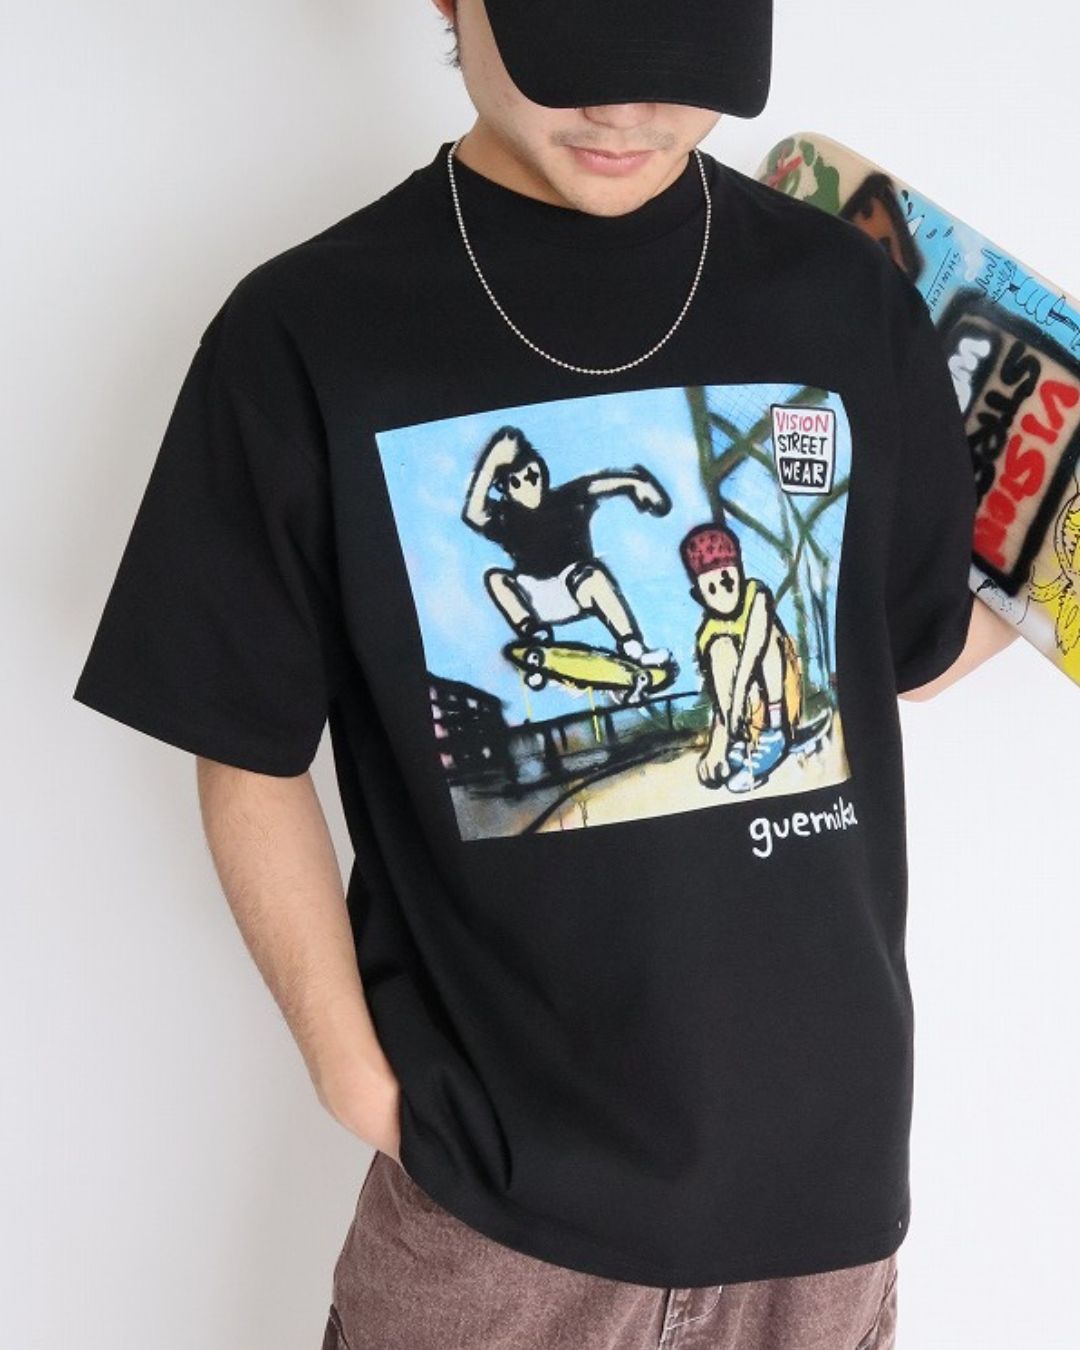 【guernika】VISIONアートTシャツ